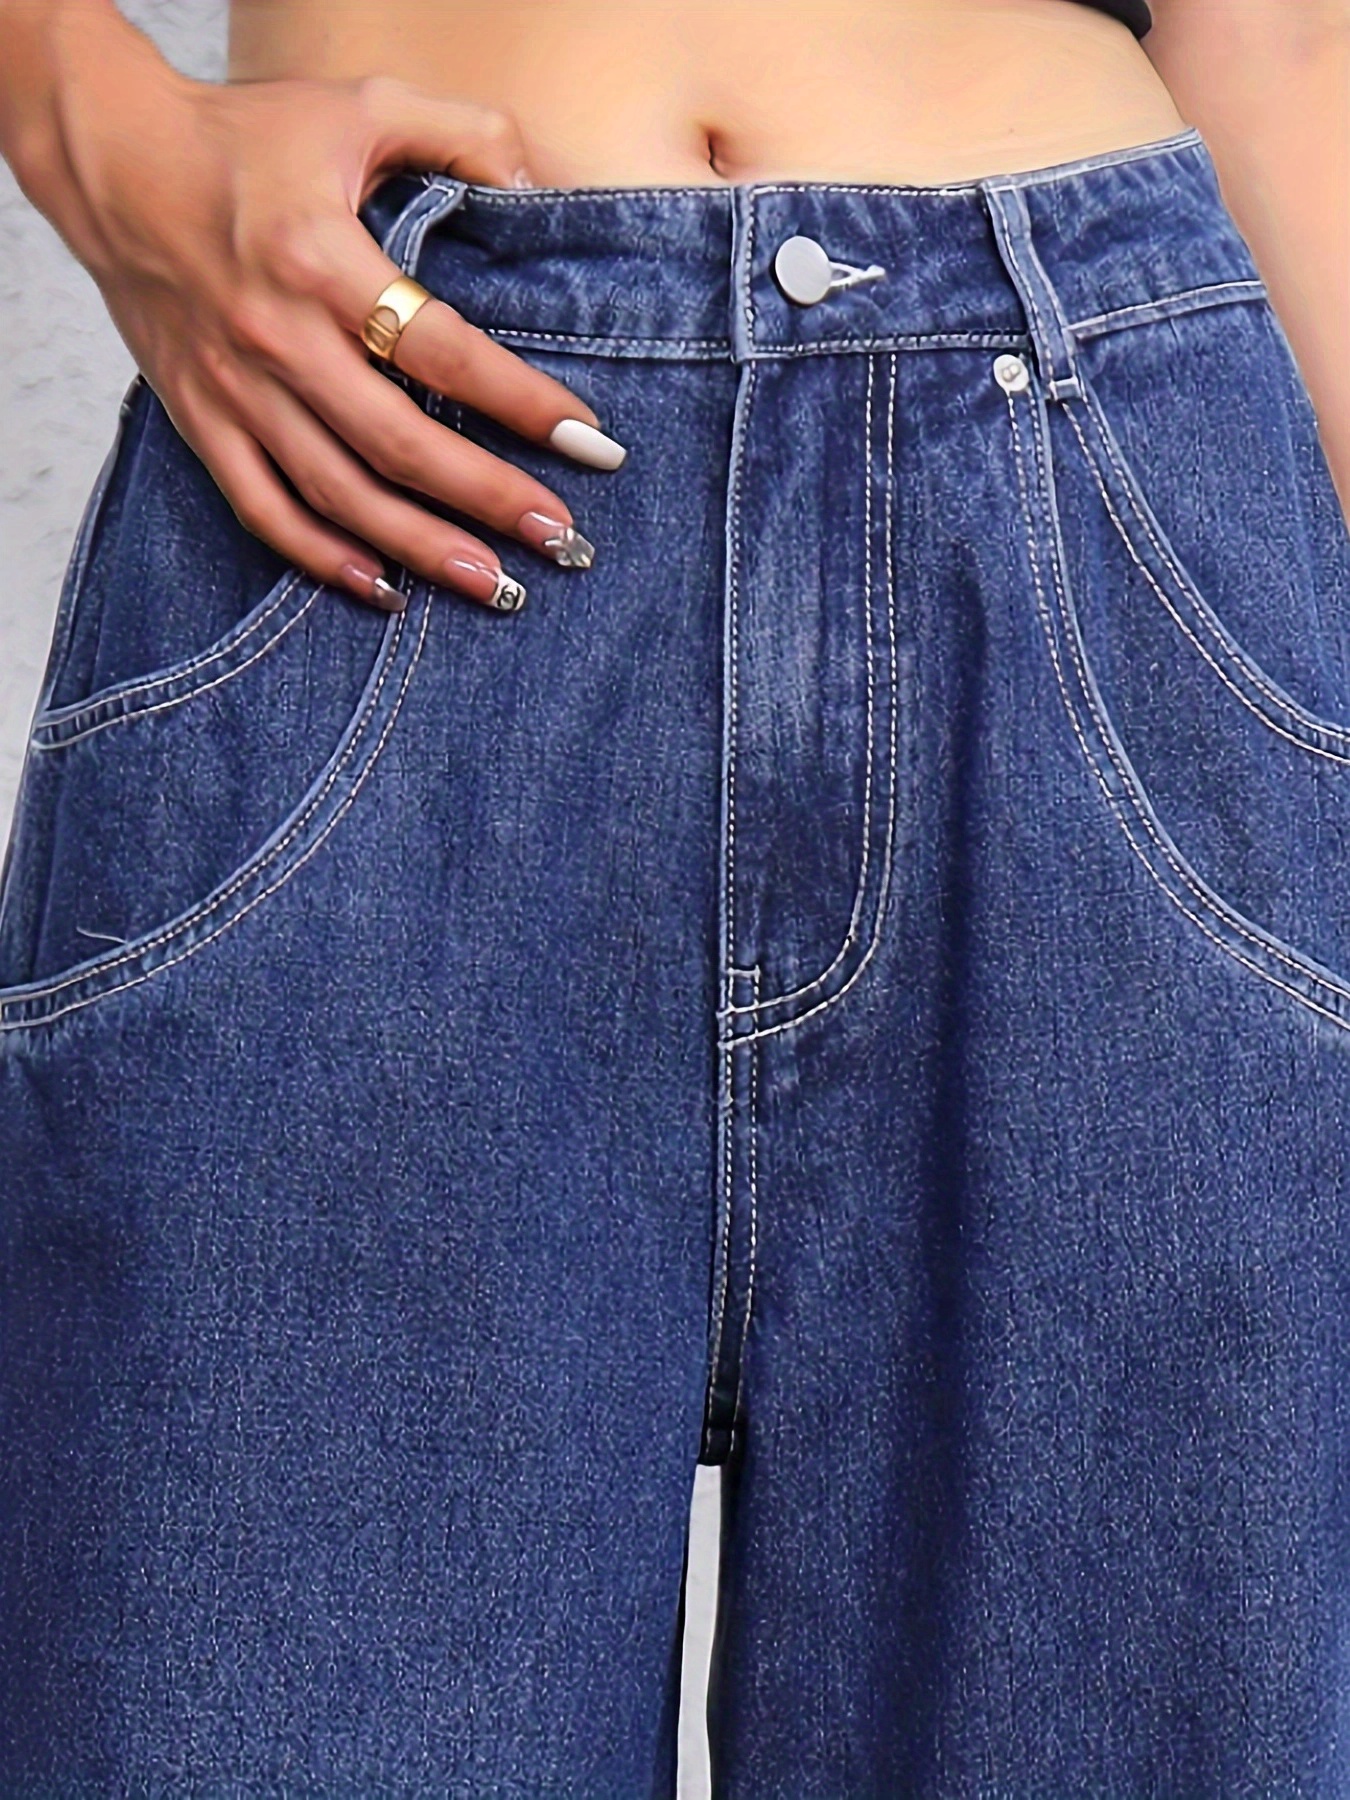 Buy Girls Jeans, Women Jeans, 6 Pocket Wideleg Jeans